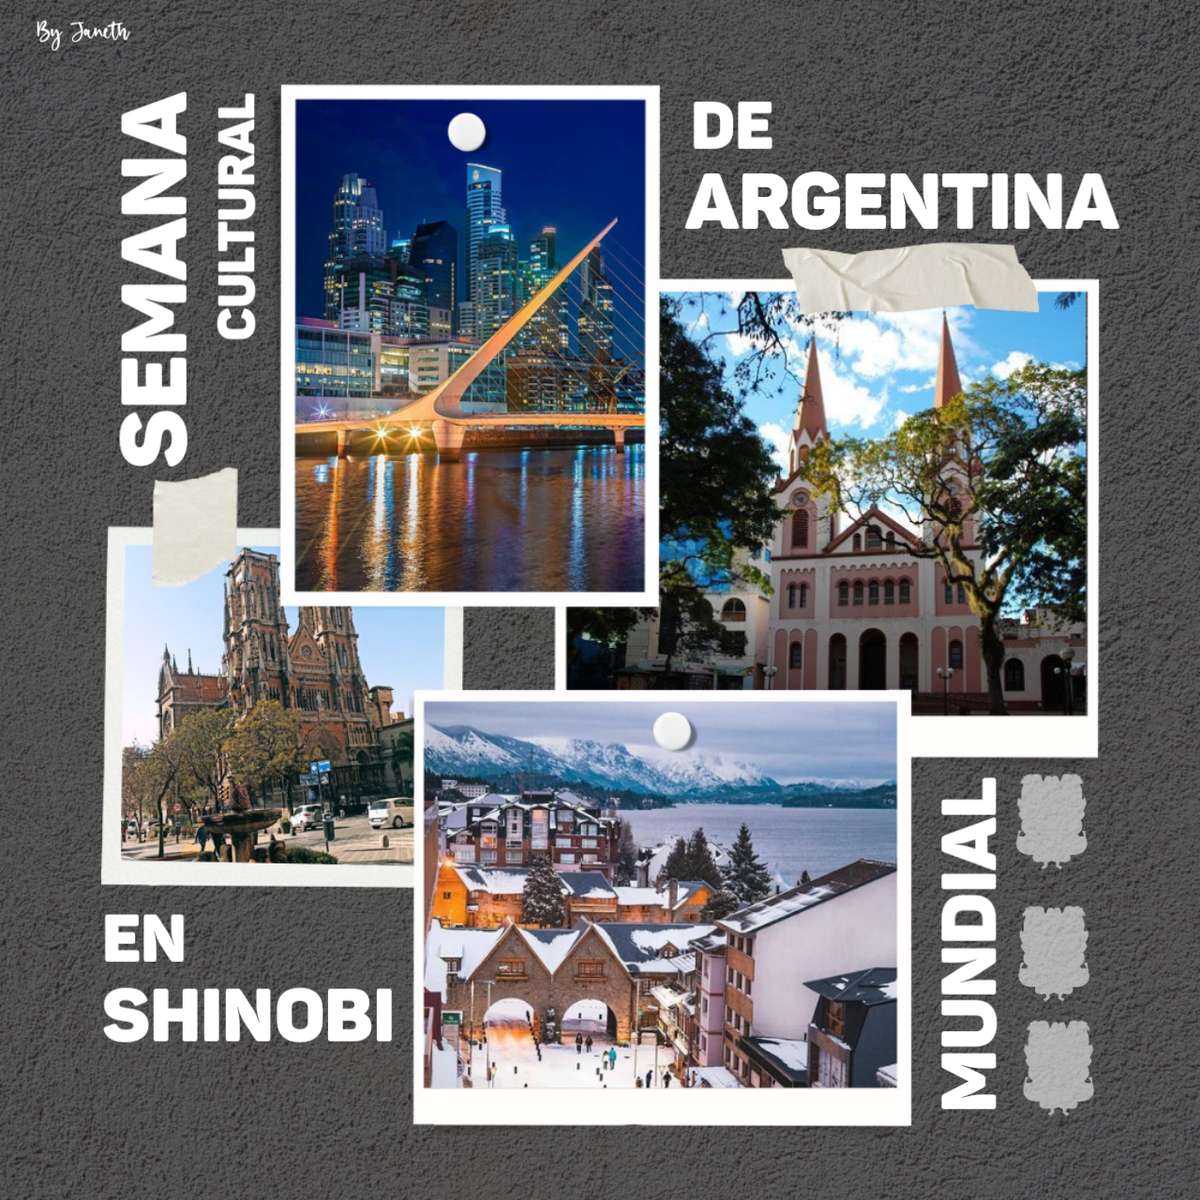 KULTURNÍ TÝDEN: ZEMĚ ARGENTINA VE SVĚTĚ SHINOBI online puzzle